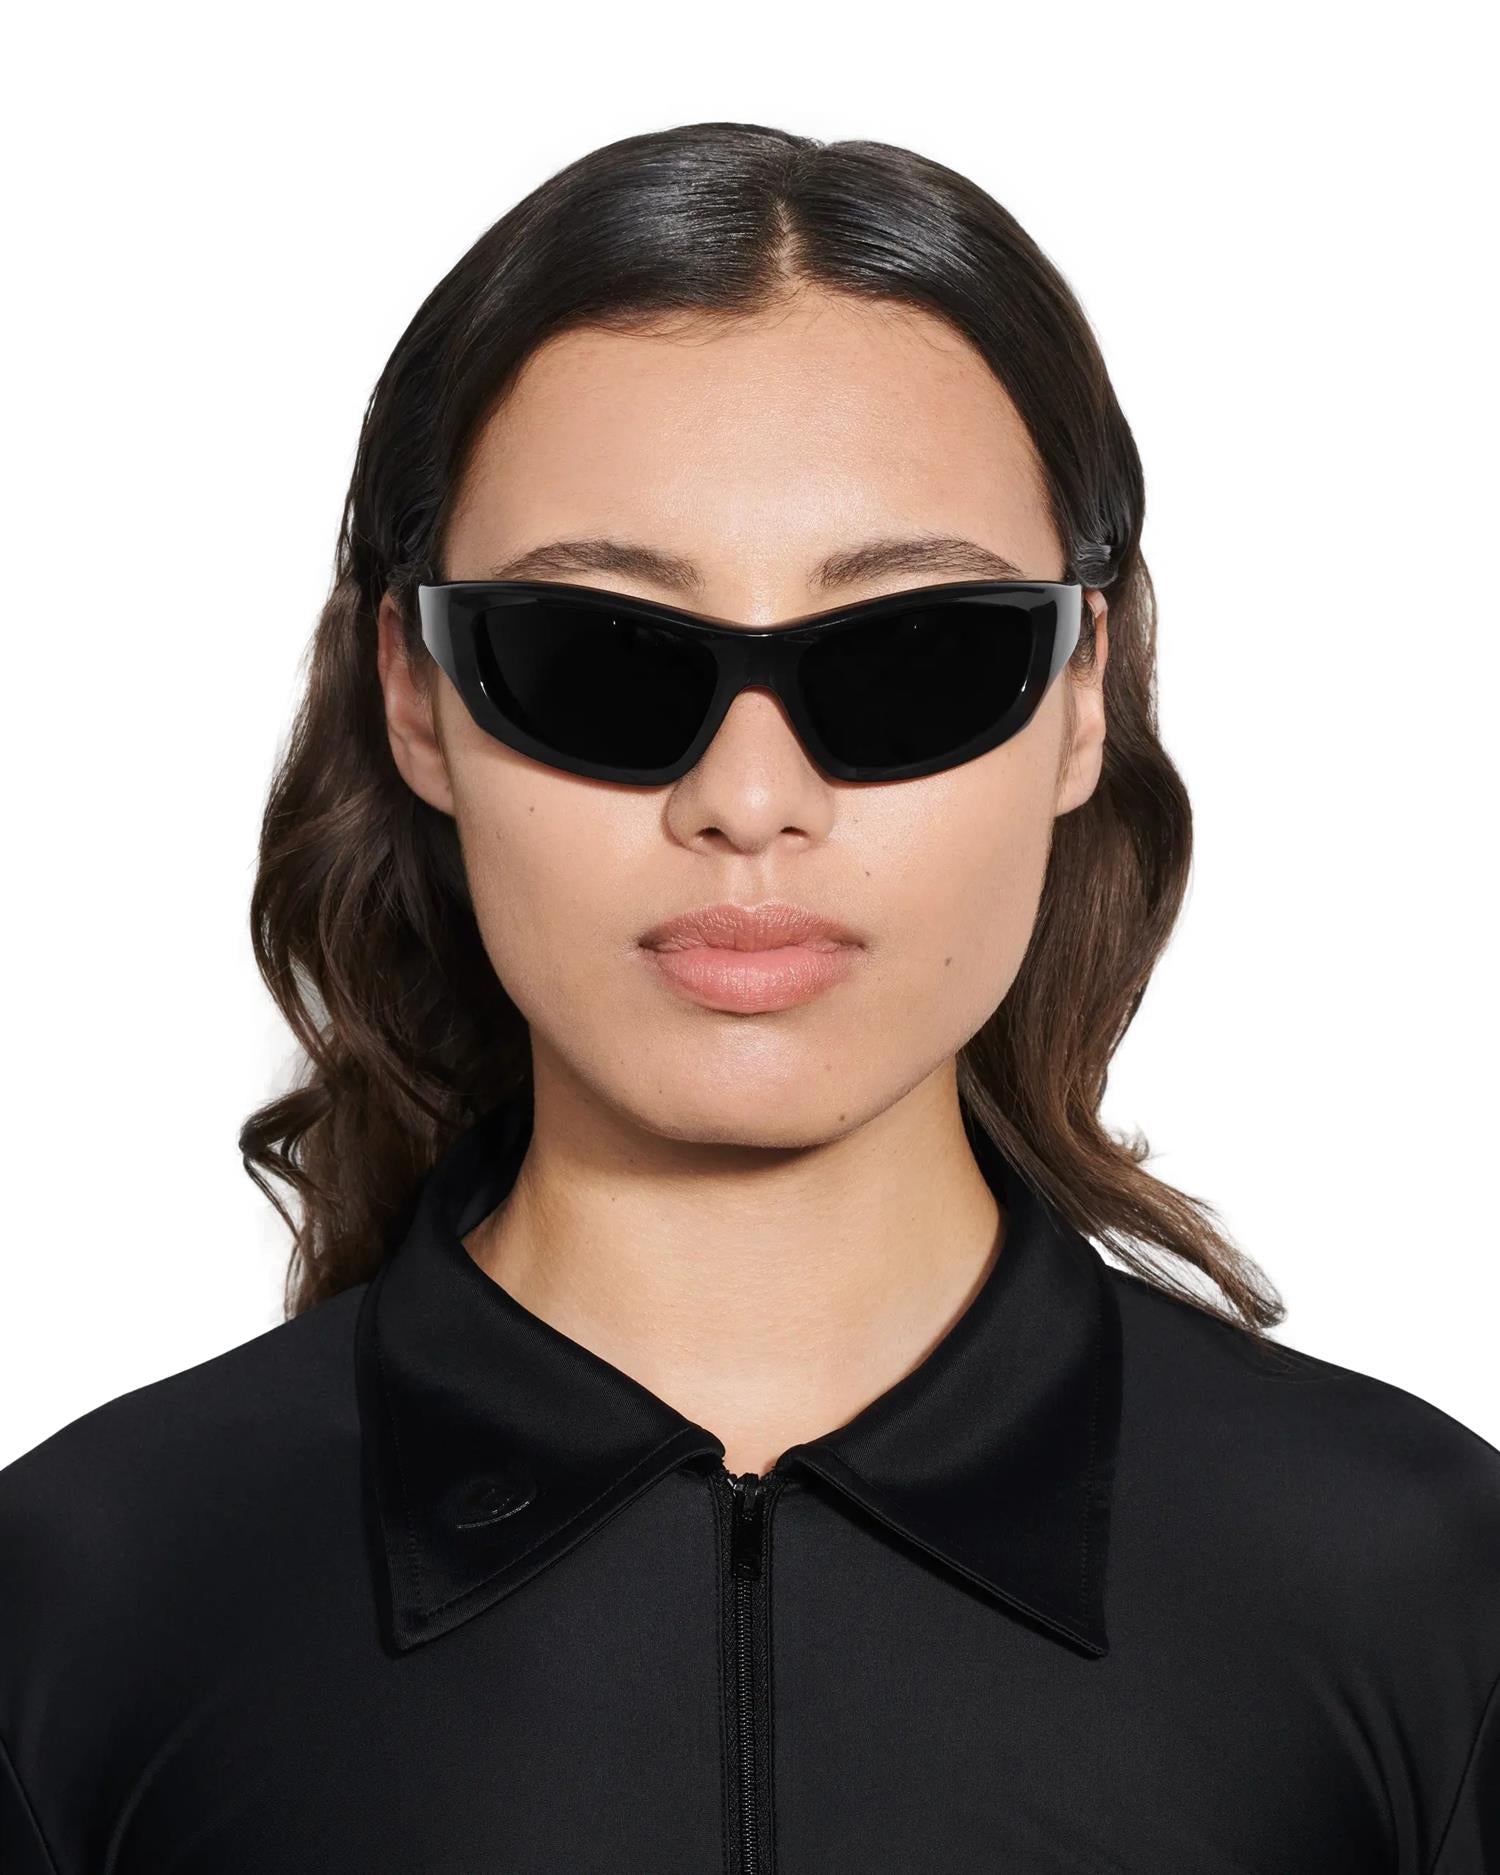 Shop Chimi Eyewear Flash Black Solbriller Sort her - Norsk, rask levering ikkebutikk.no